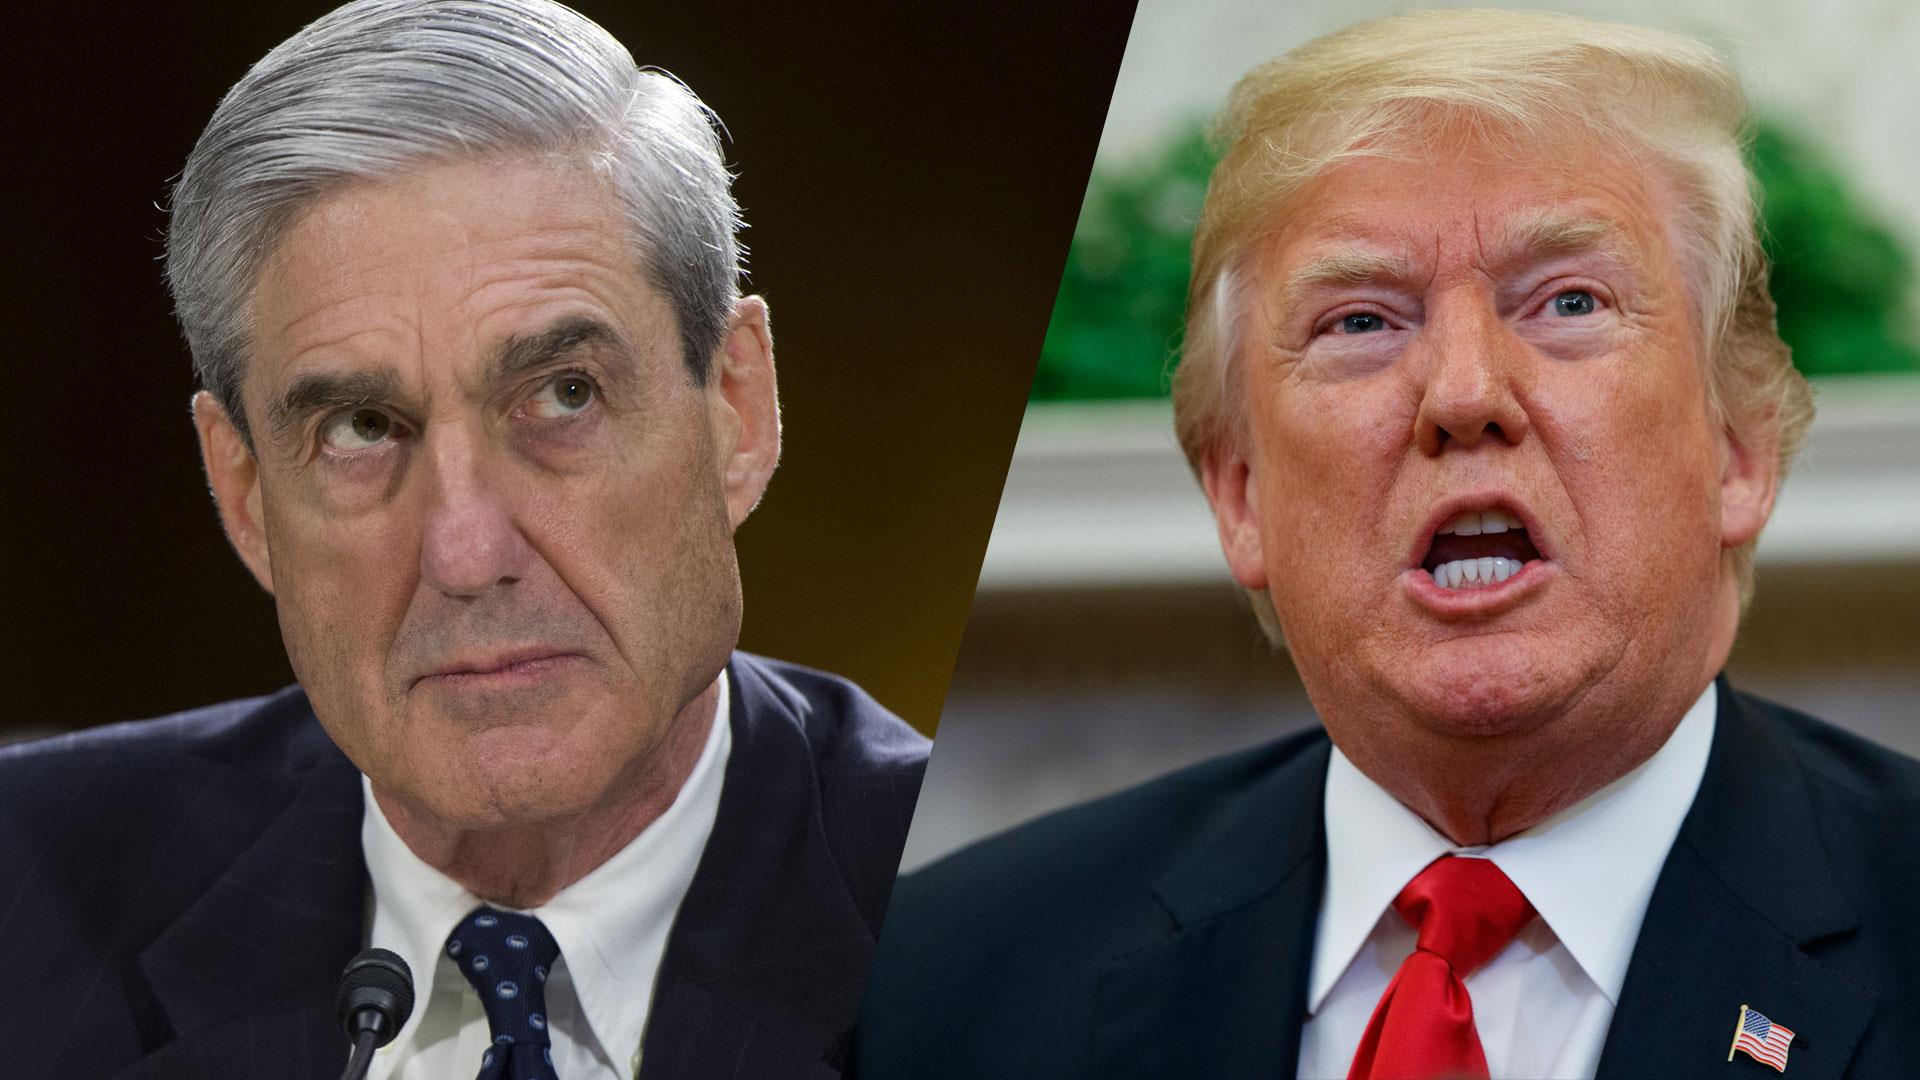 Mueller investigation celebrates one year anniversary 